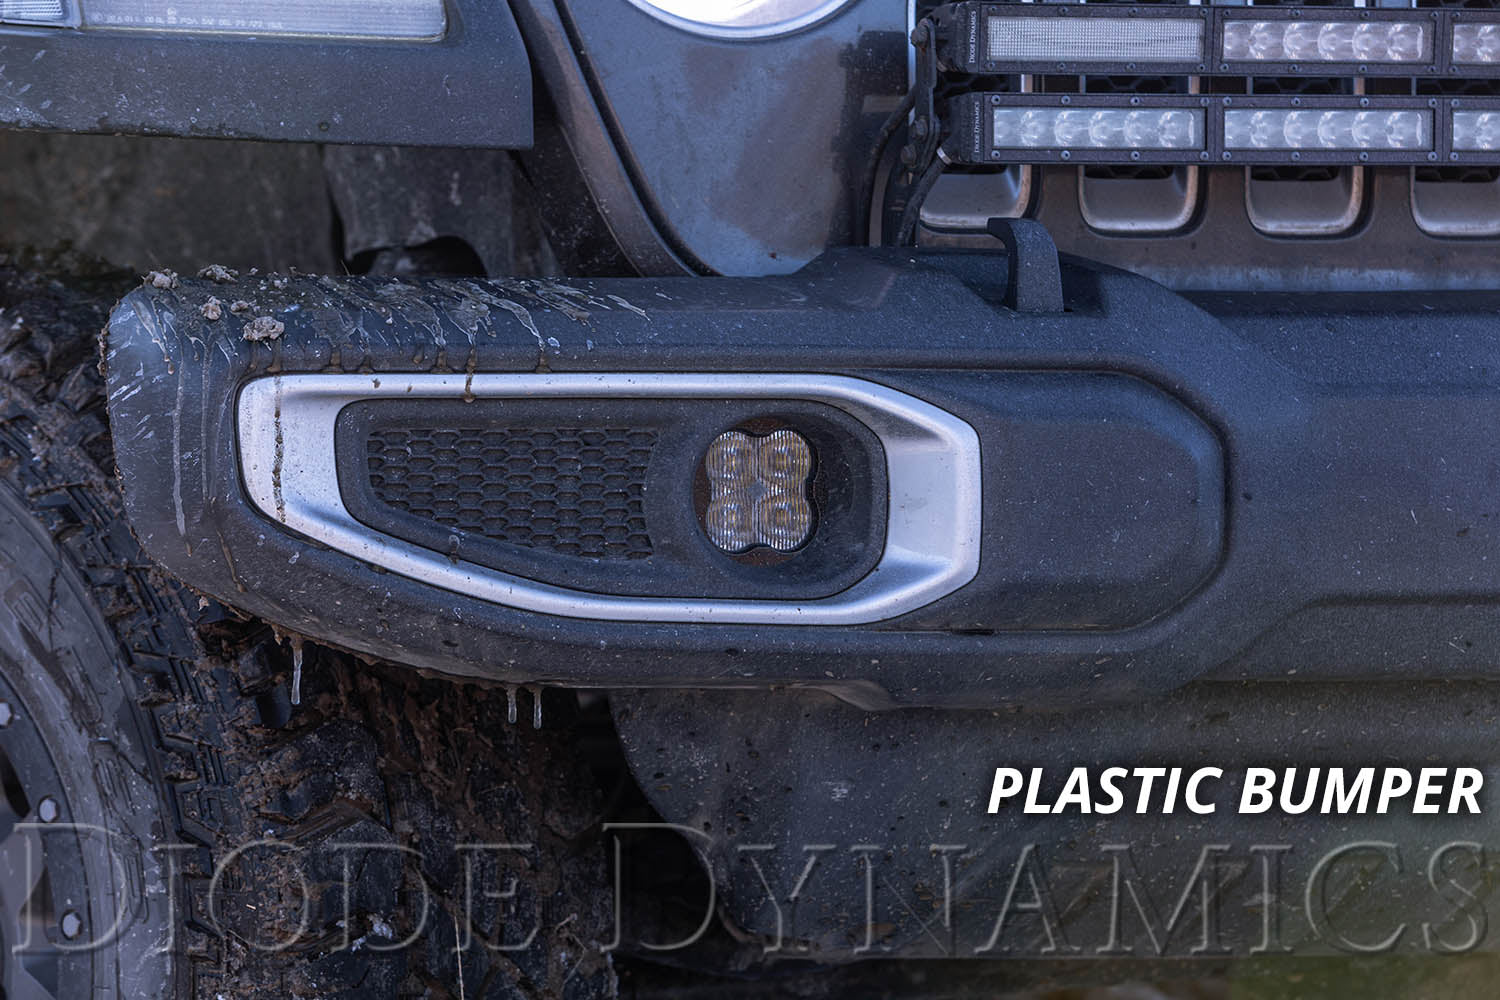 SS3 LED Fog Light Kit for 2020-2021 Jeep Gladiator Yellow SAE Fog Sport w/ Backlight Type M Bracket Kit Diode Dynamics